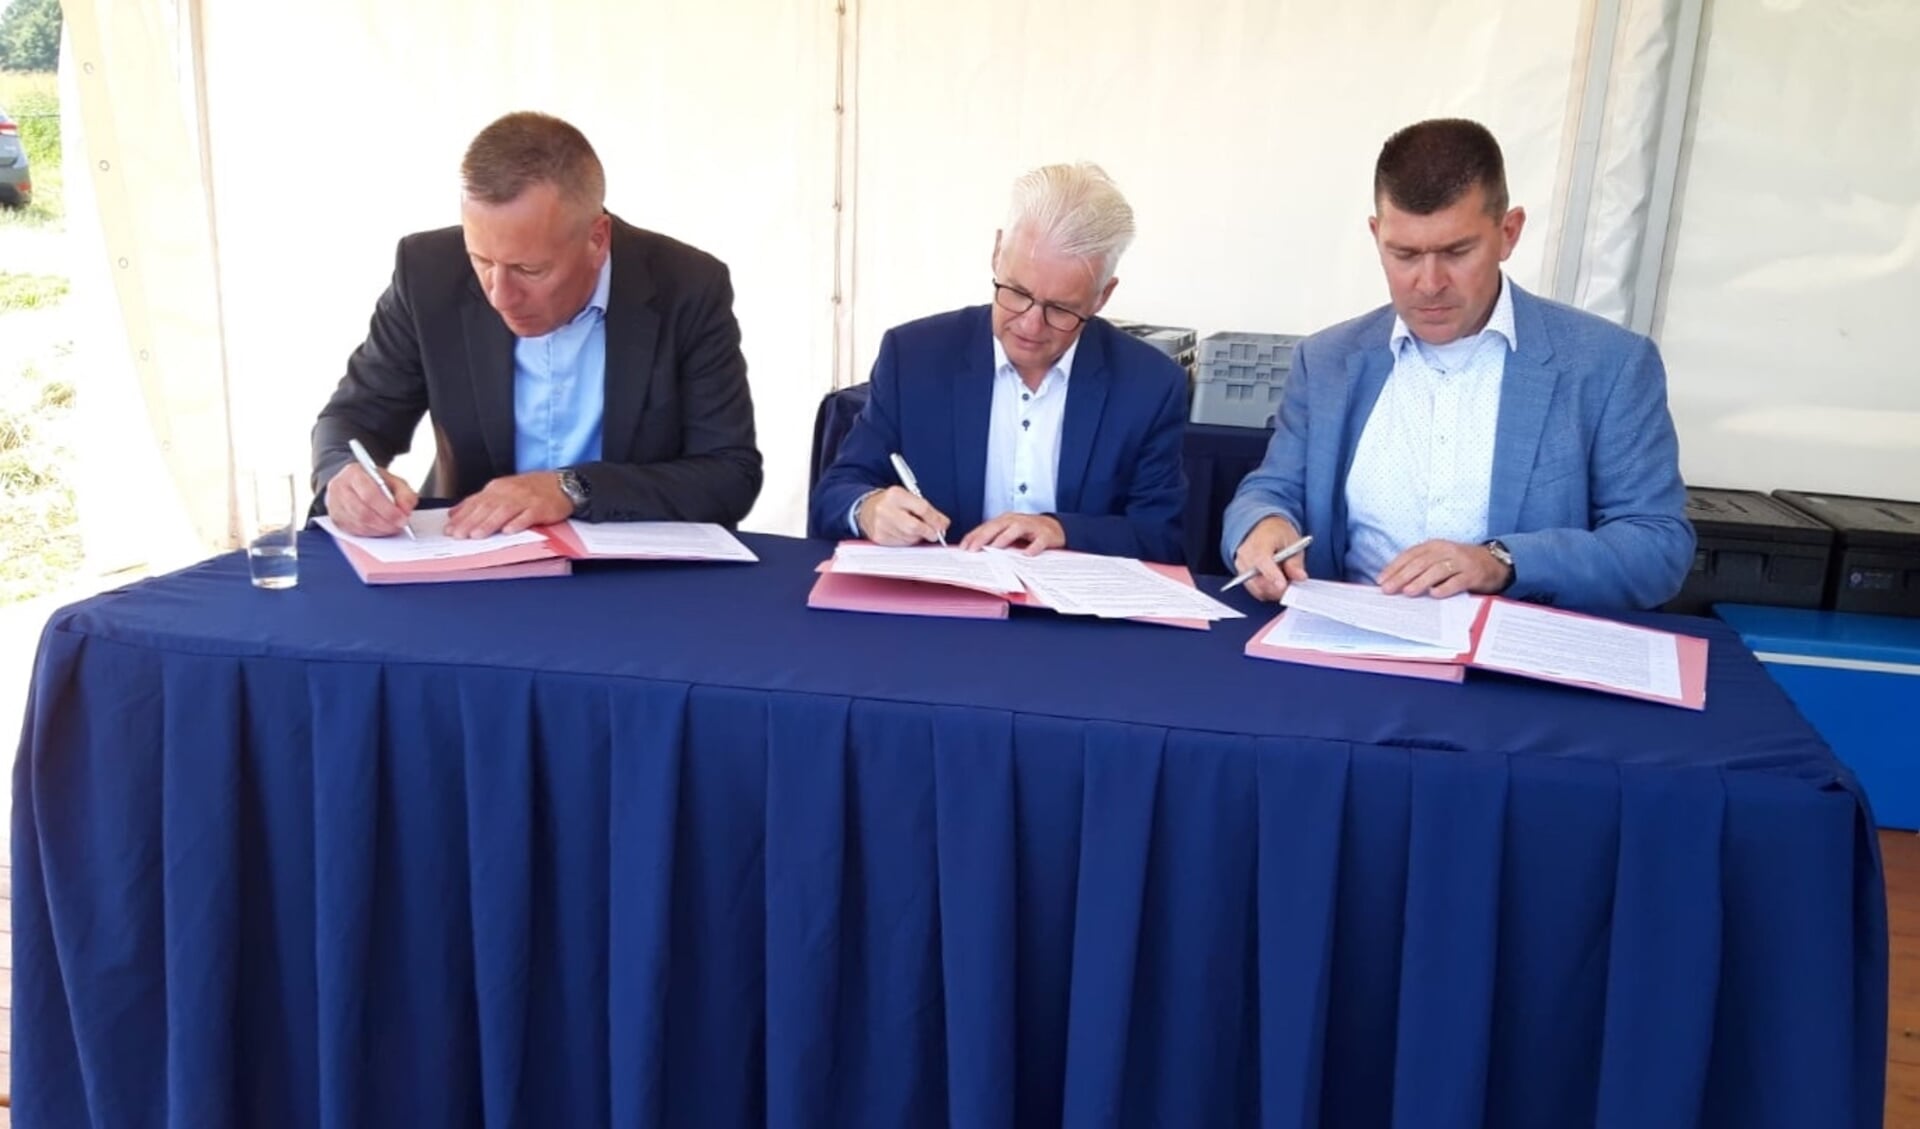 Brian Alwind (DSV), Frank Hommel (wethouder gemeente Tholen), Arno van Berlo (DSV) tijdens de ondertekening. 